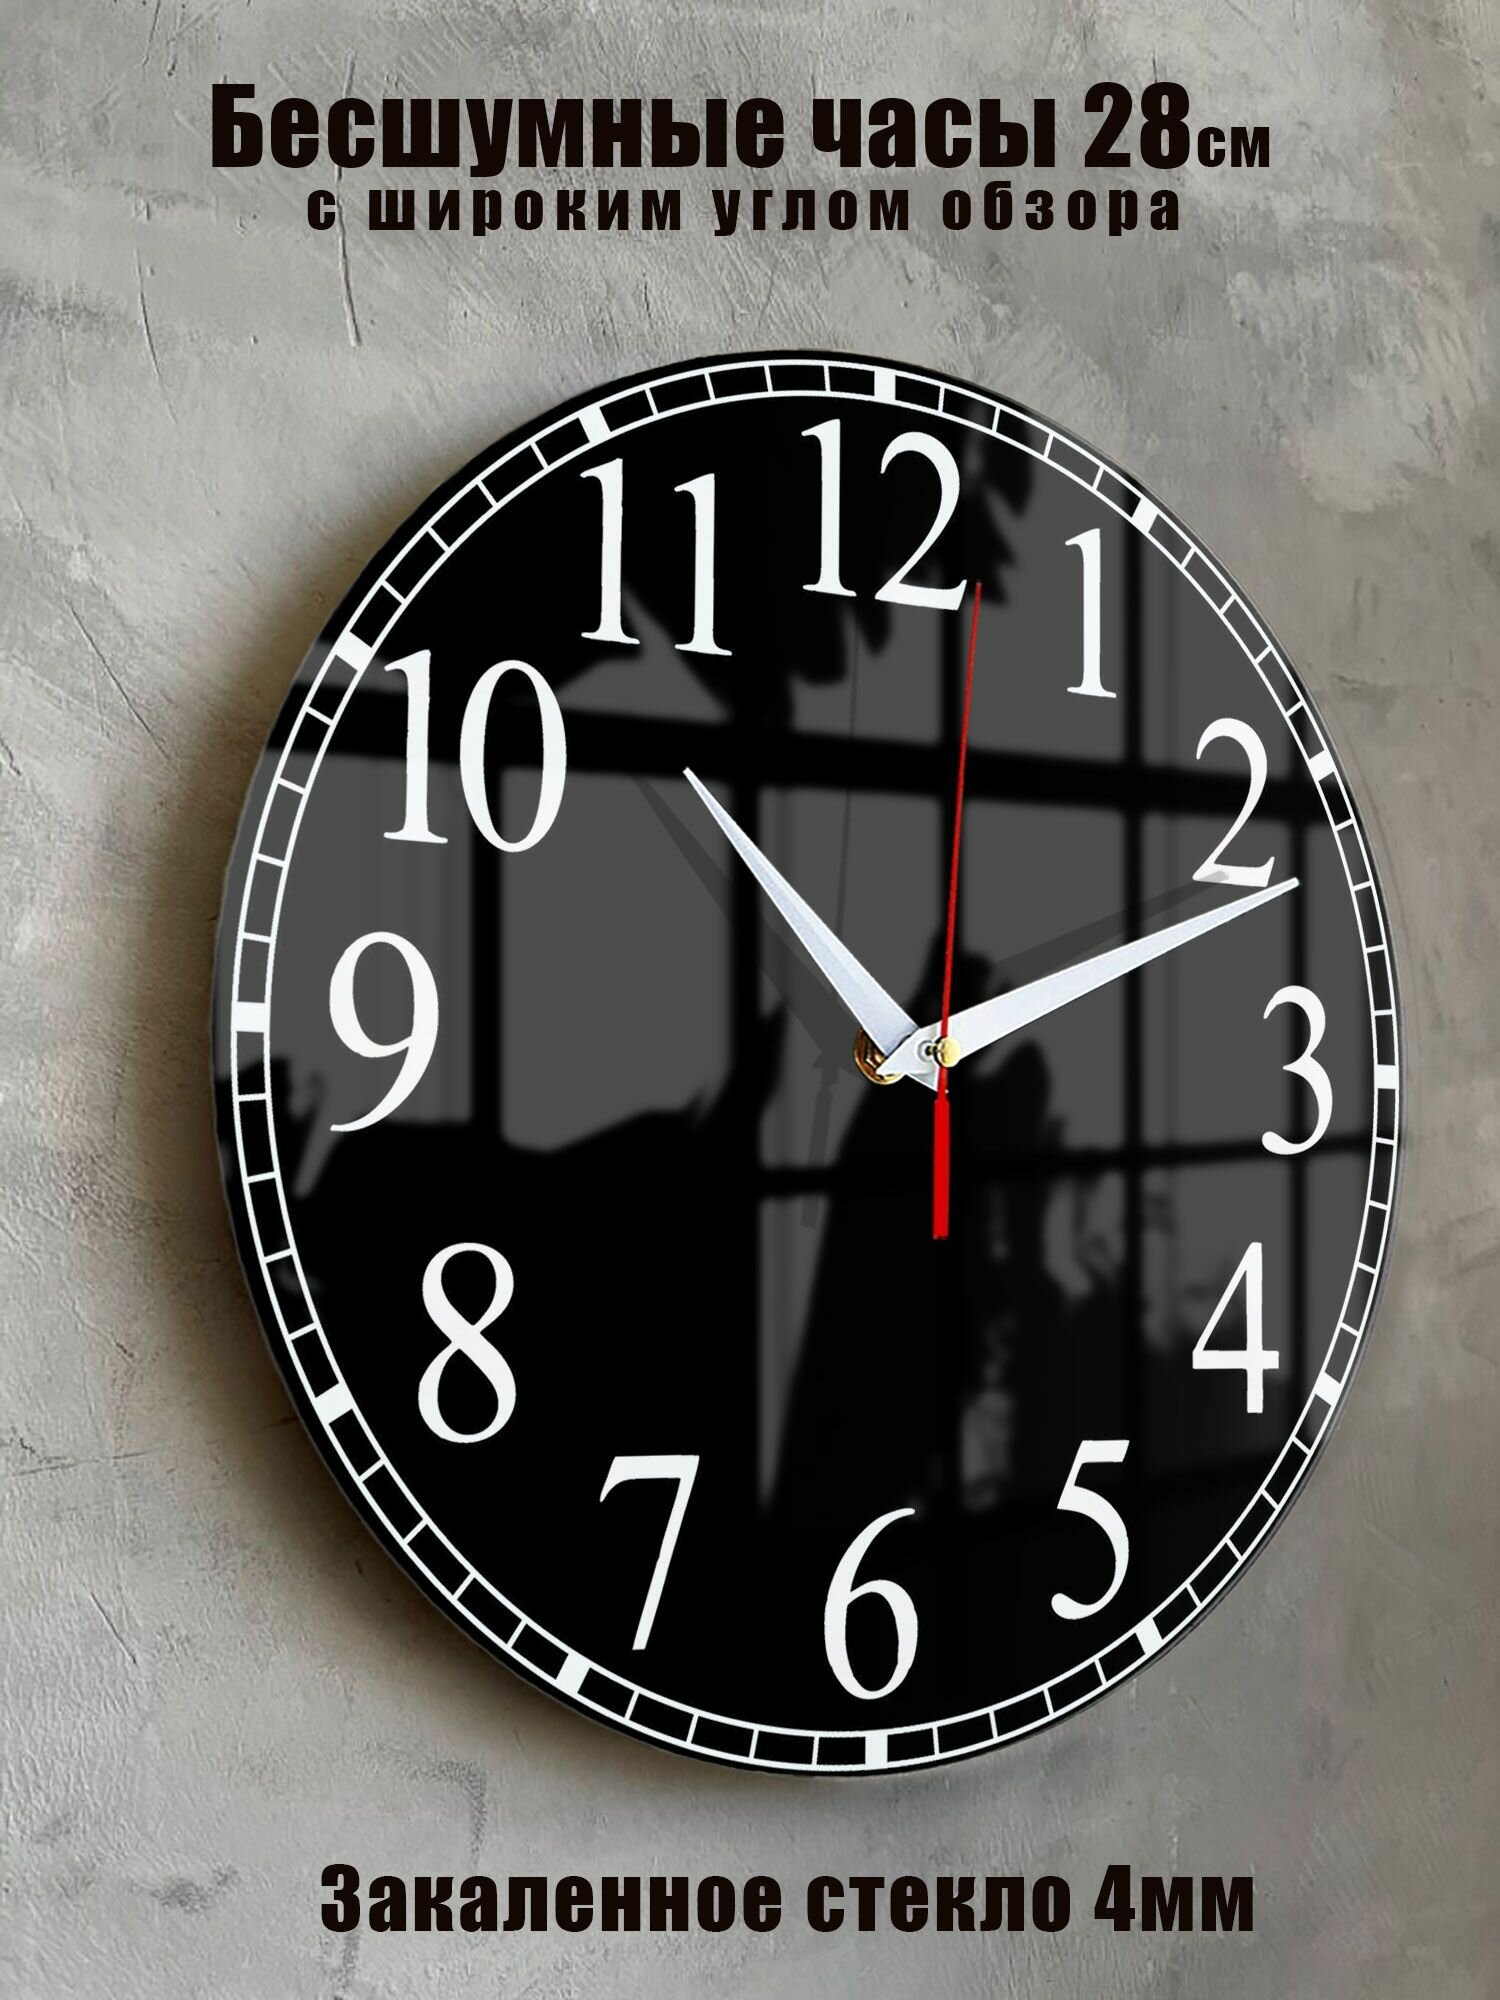 Часы настенные бесшумные большие на кухню на стену Черные Четкие цифры, "Часовой завод идеал", часы кухонные настенные интерьерные настенные часы